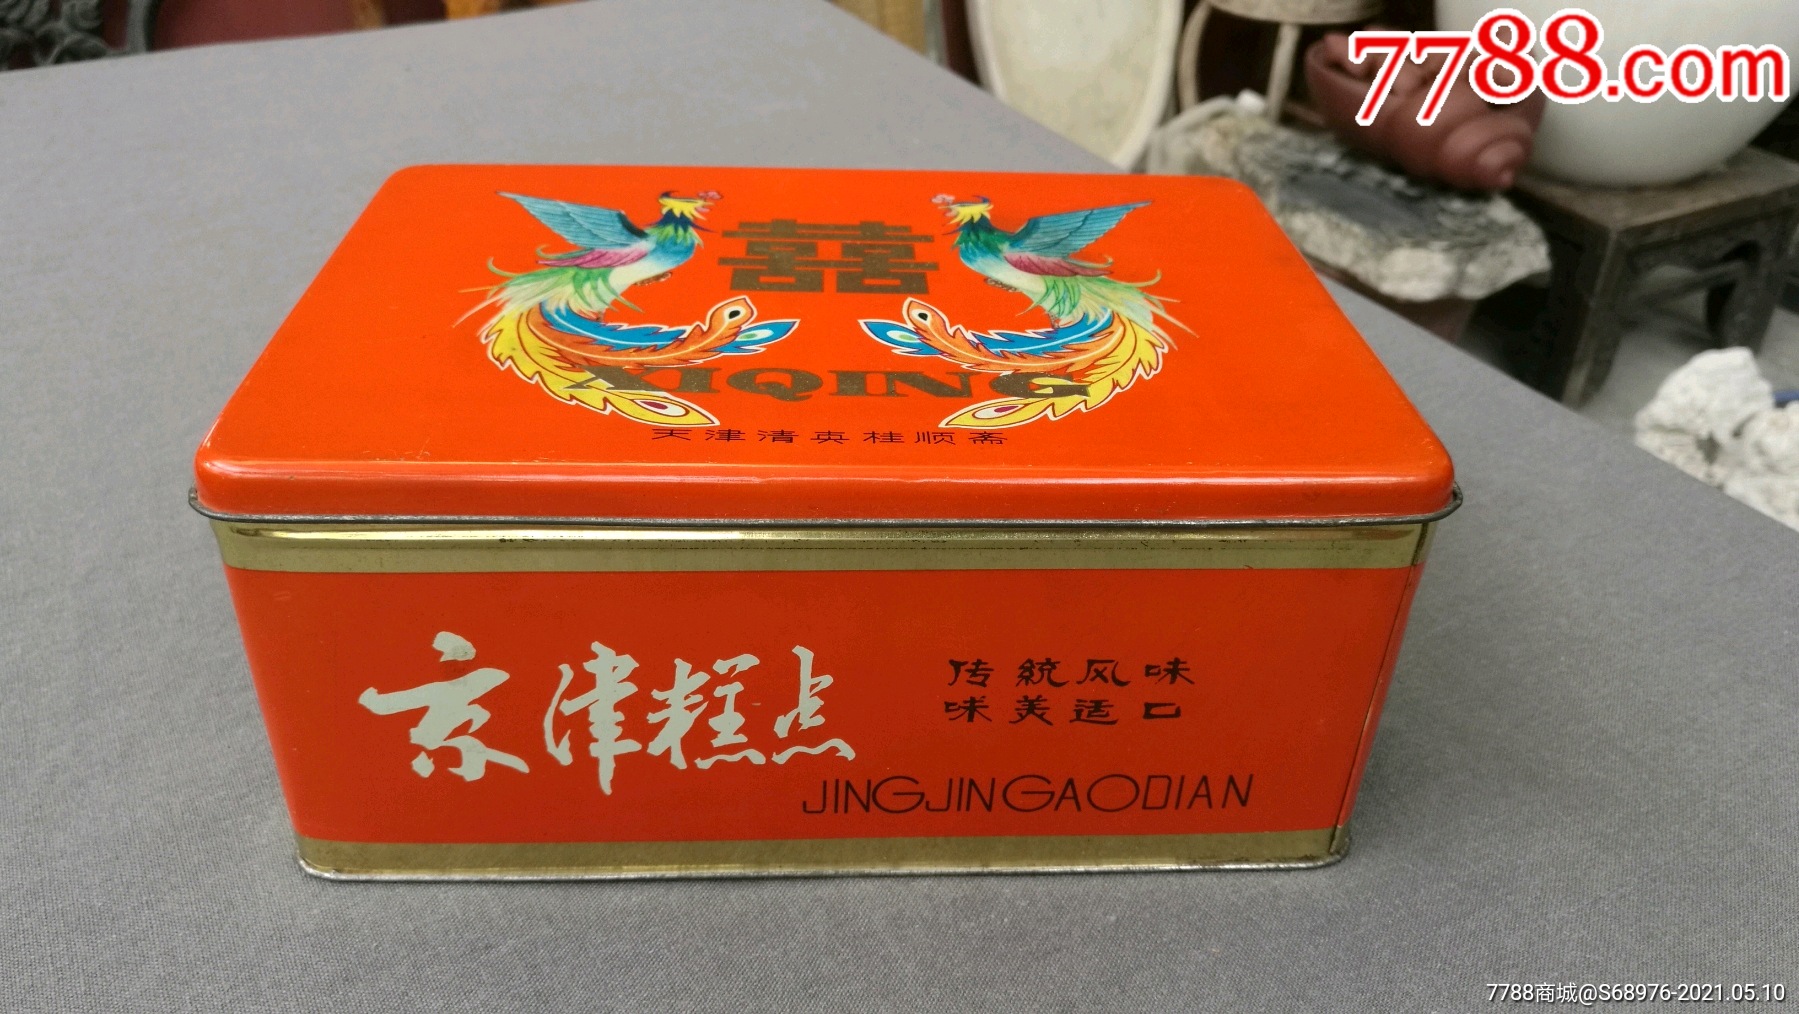 老铁盒,80年代桂顺斋月饼,糕点铁盒,时代特征明显,可做年代戏影视道具